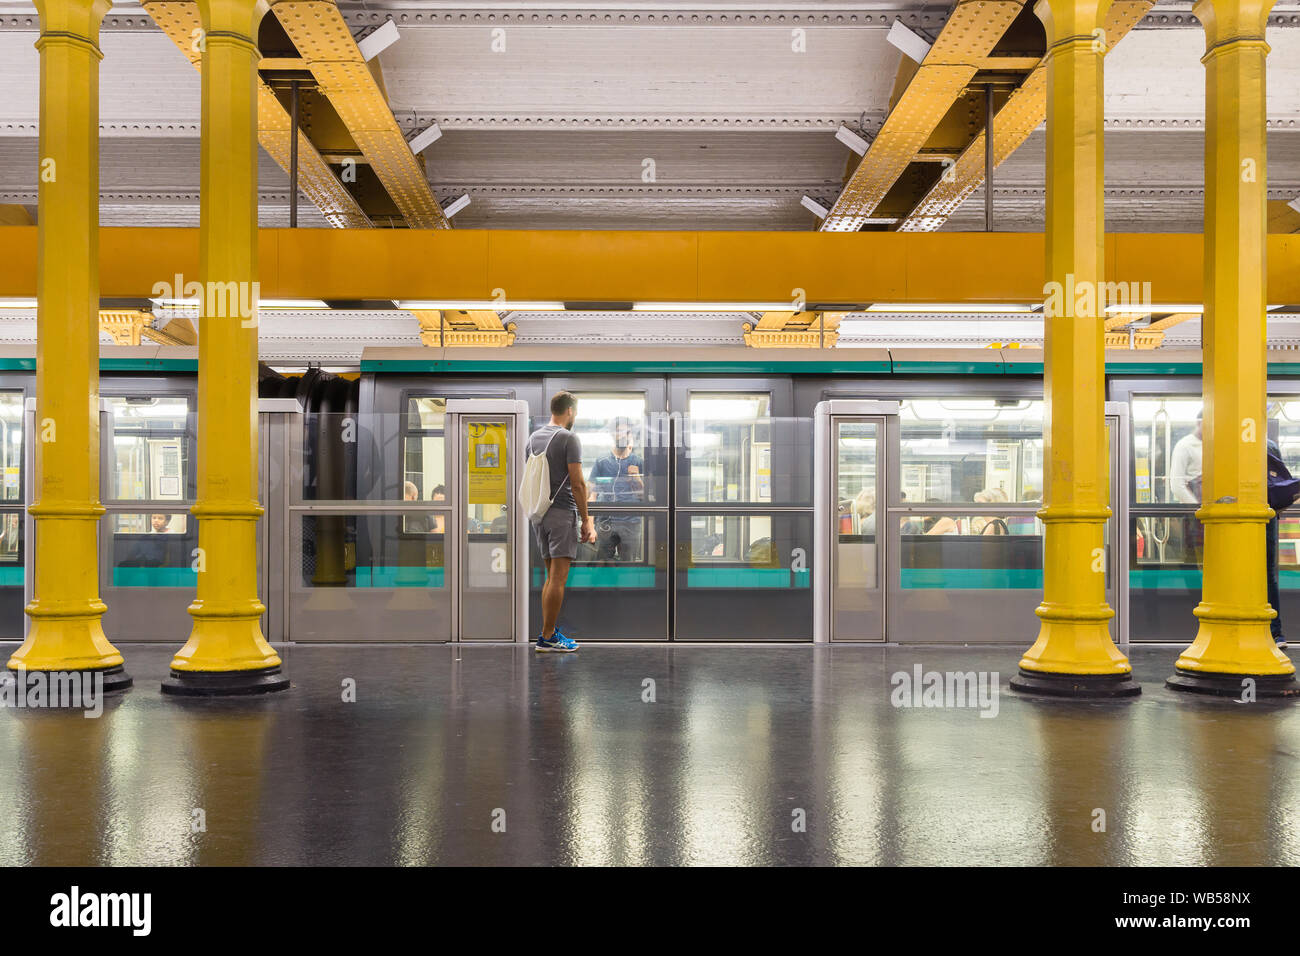 La station de métro Paris - Parisiens attendent sur la ligne de métro no. 1 à la Gare de Lyon. La France, l'Europe. Banque D'Images